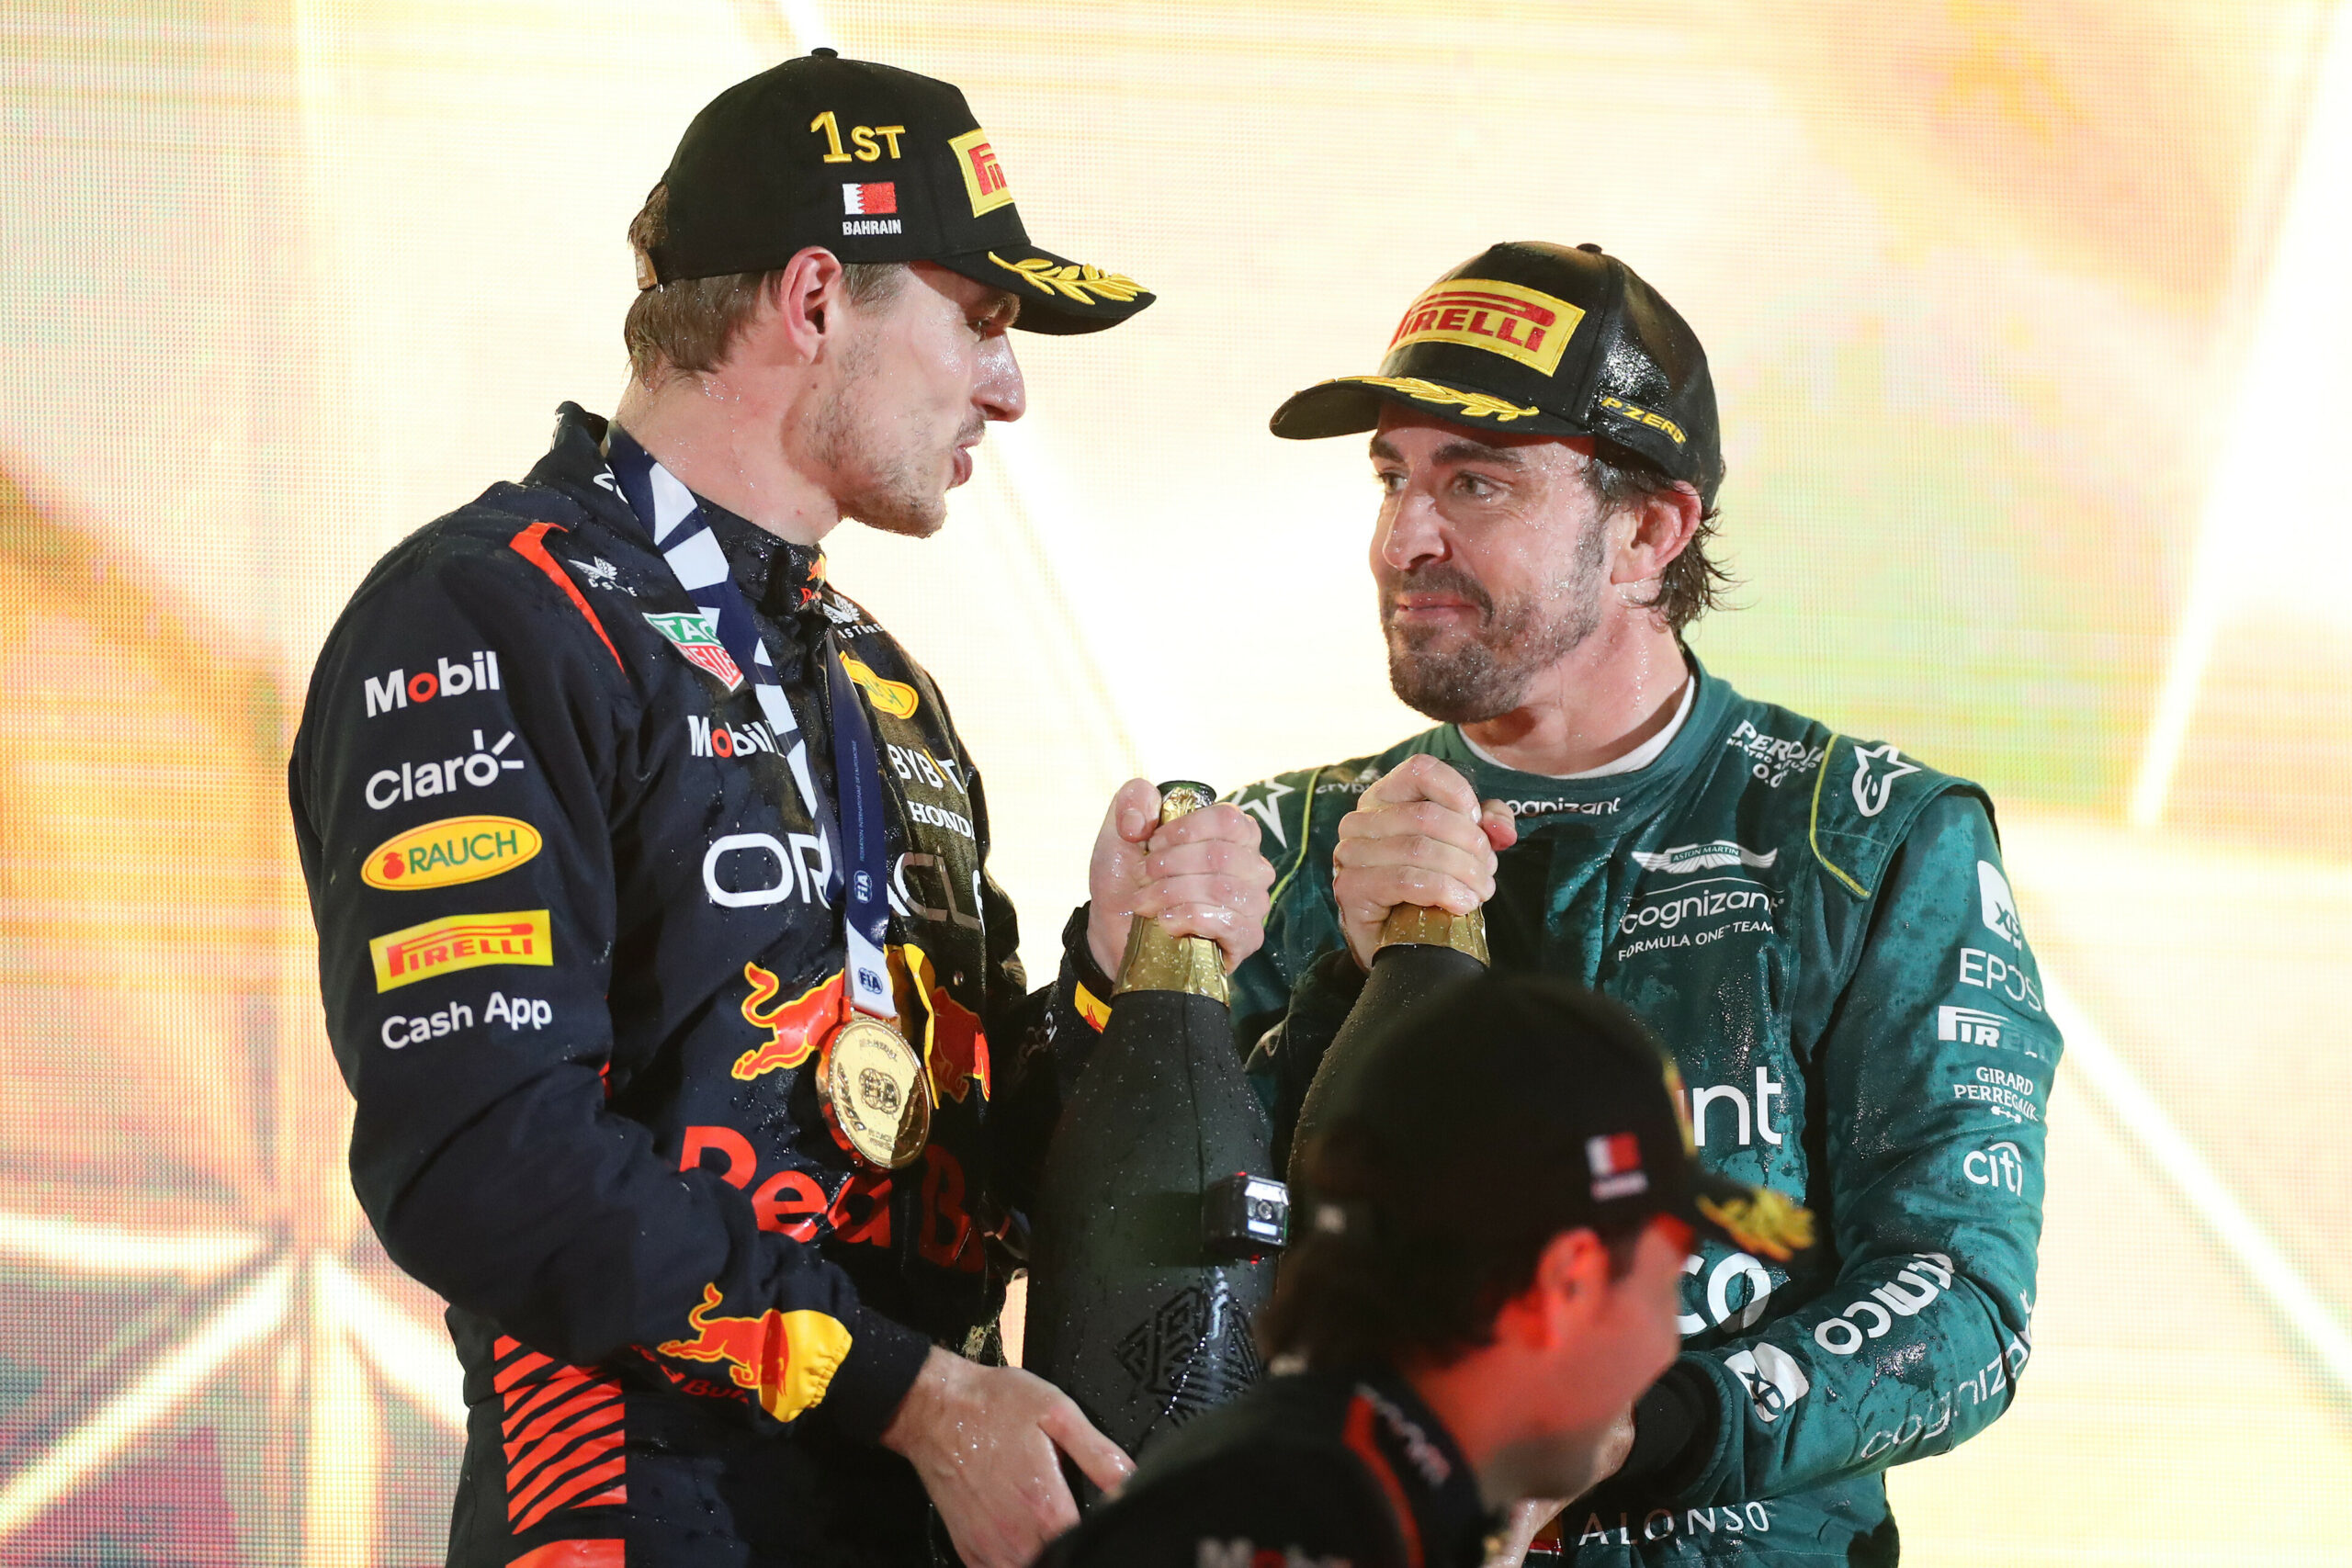 Patrick lista dupla ideal na F1 e escolhe Alonso-Verstappen: “Seria divertido de ver”